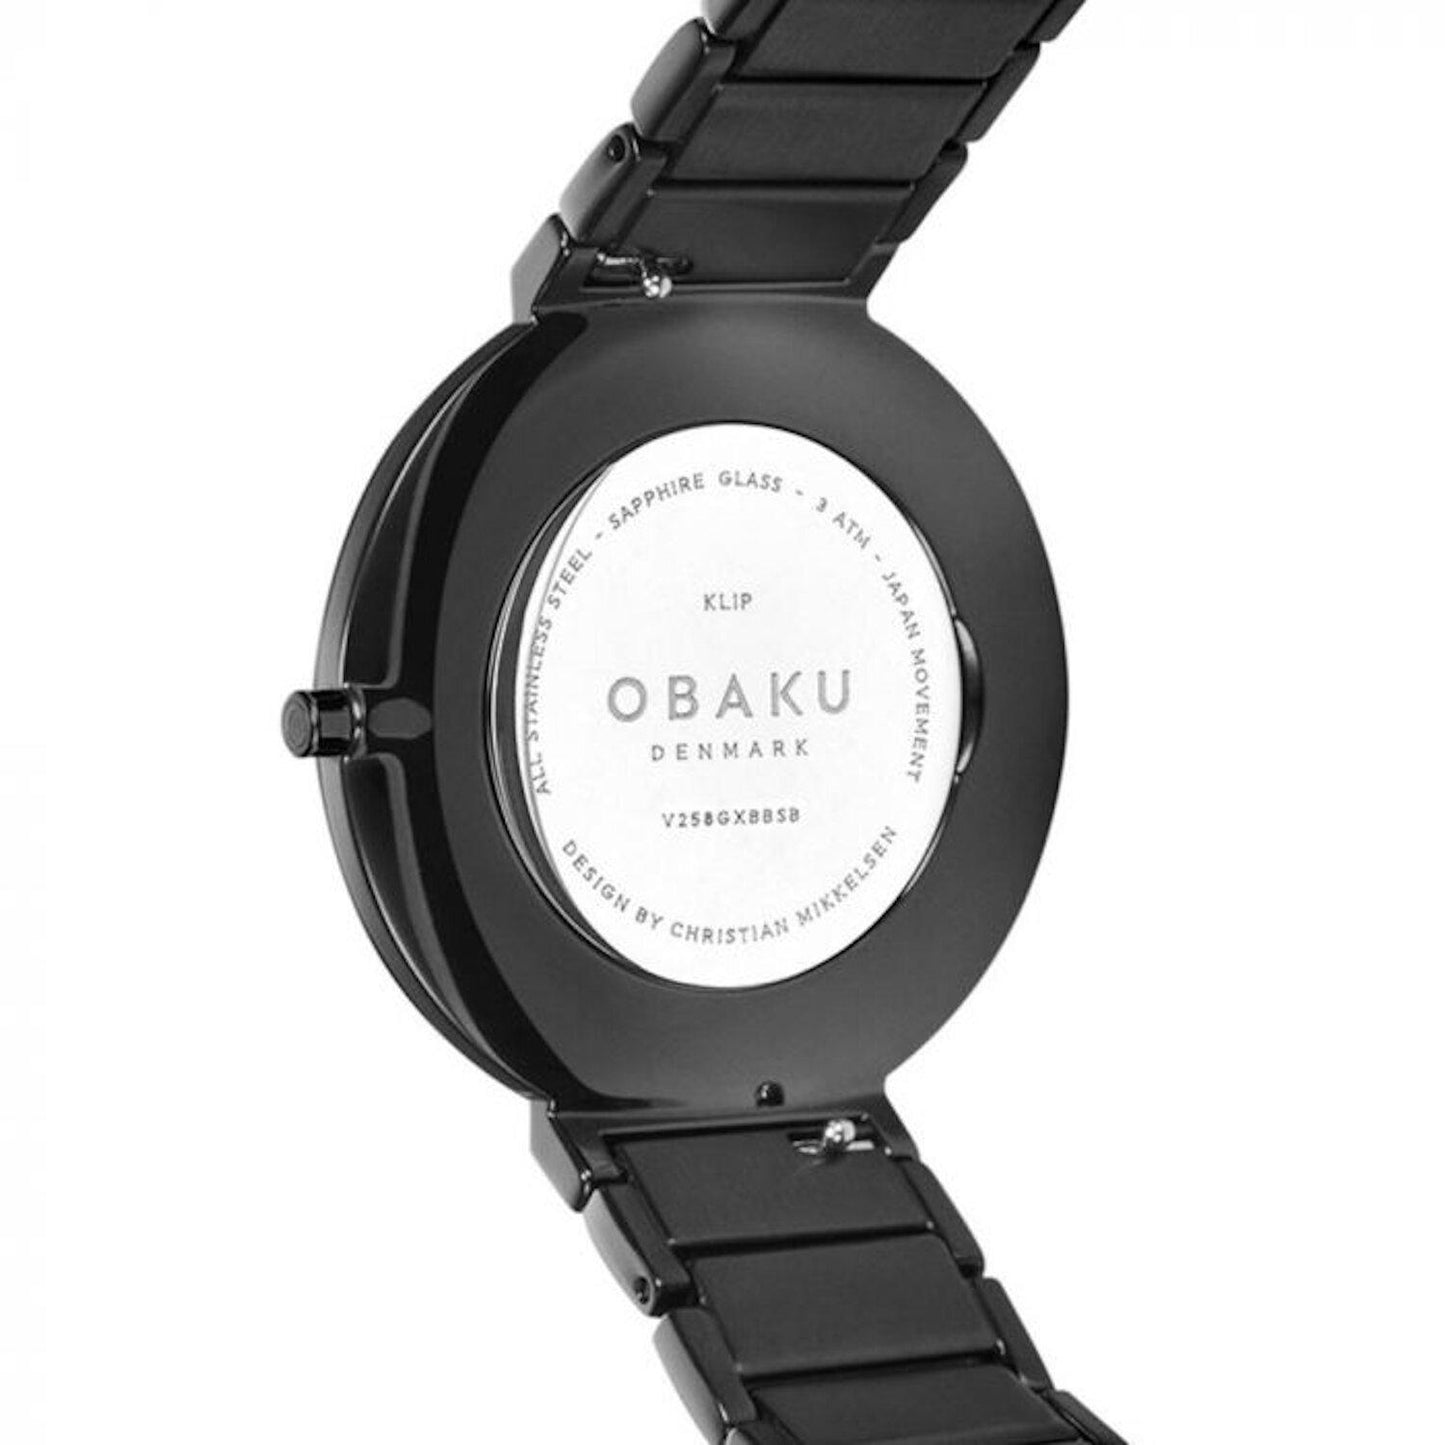 Reloj Obaku Denmark V258GXBBSB Men´s Classic-Negro